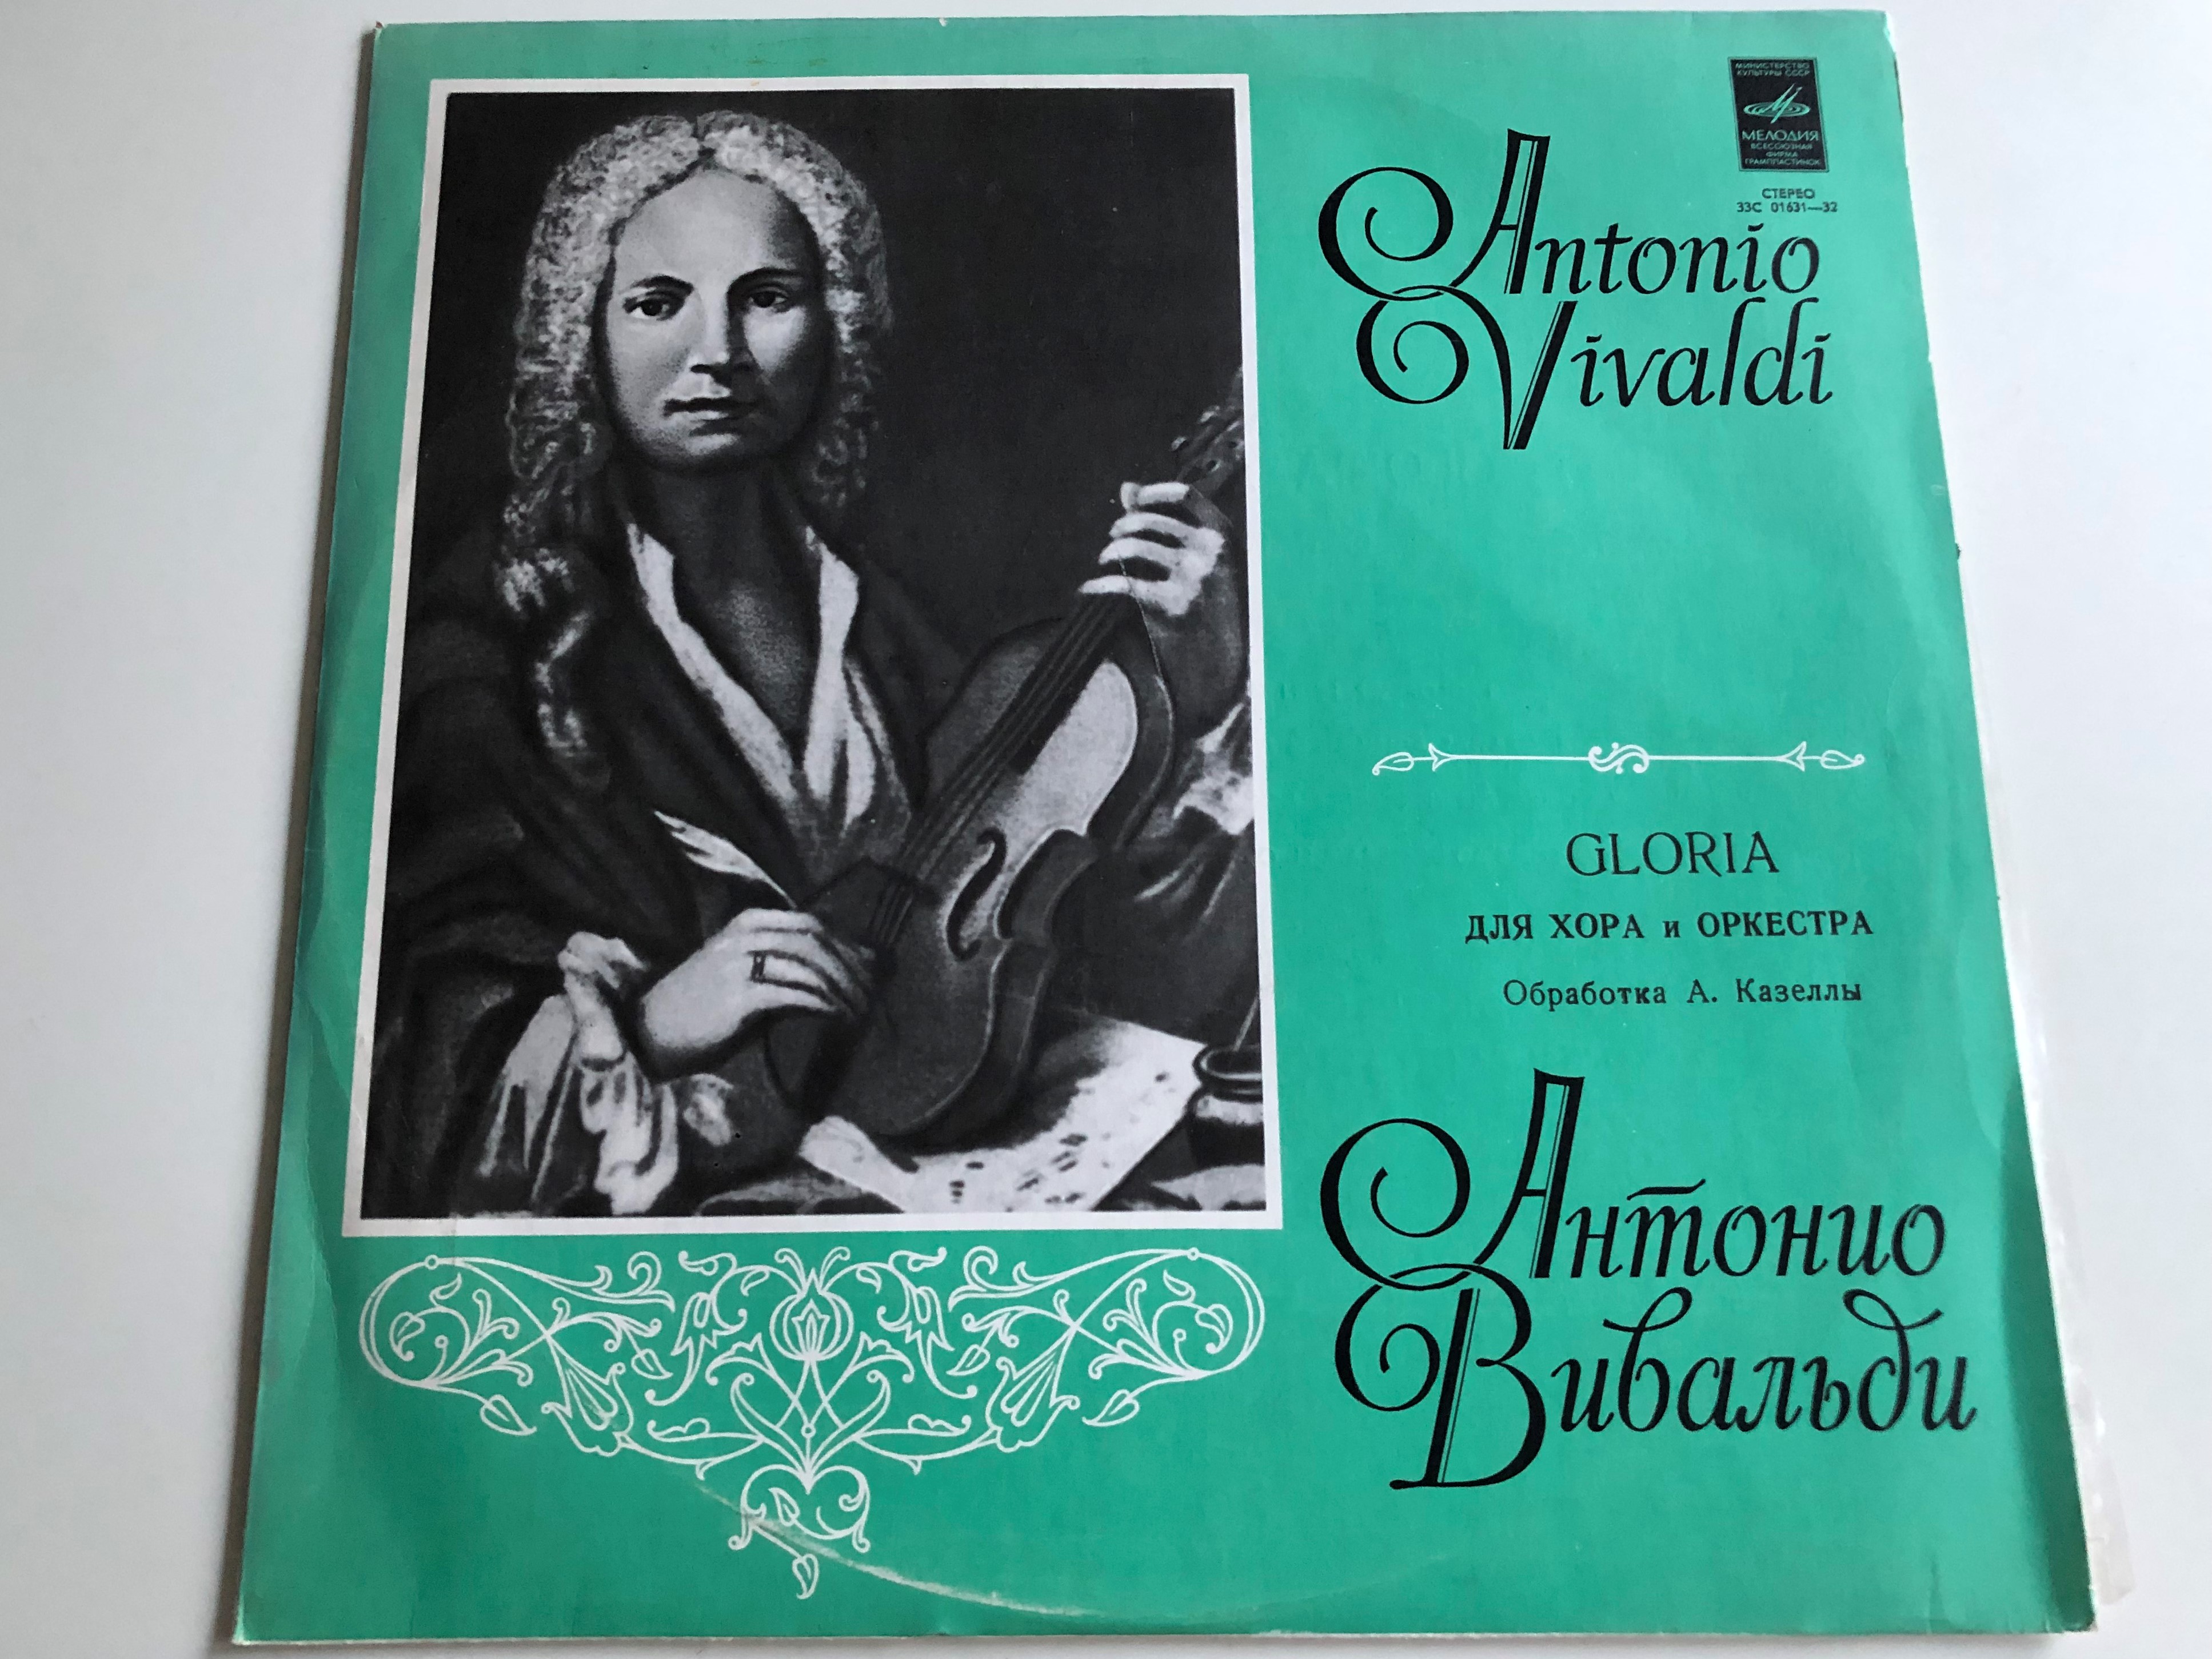 antonio-vivaldi-gloria-.-lp-stereo-33c-01631-32-1-.jpg